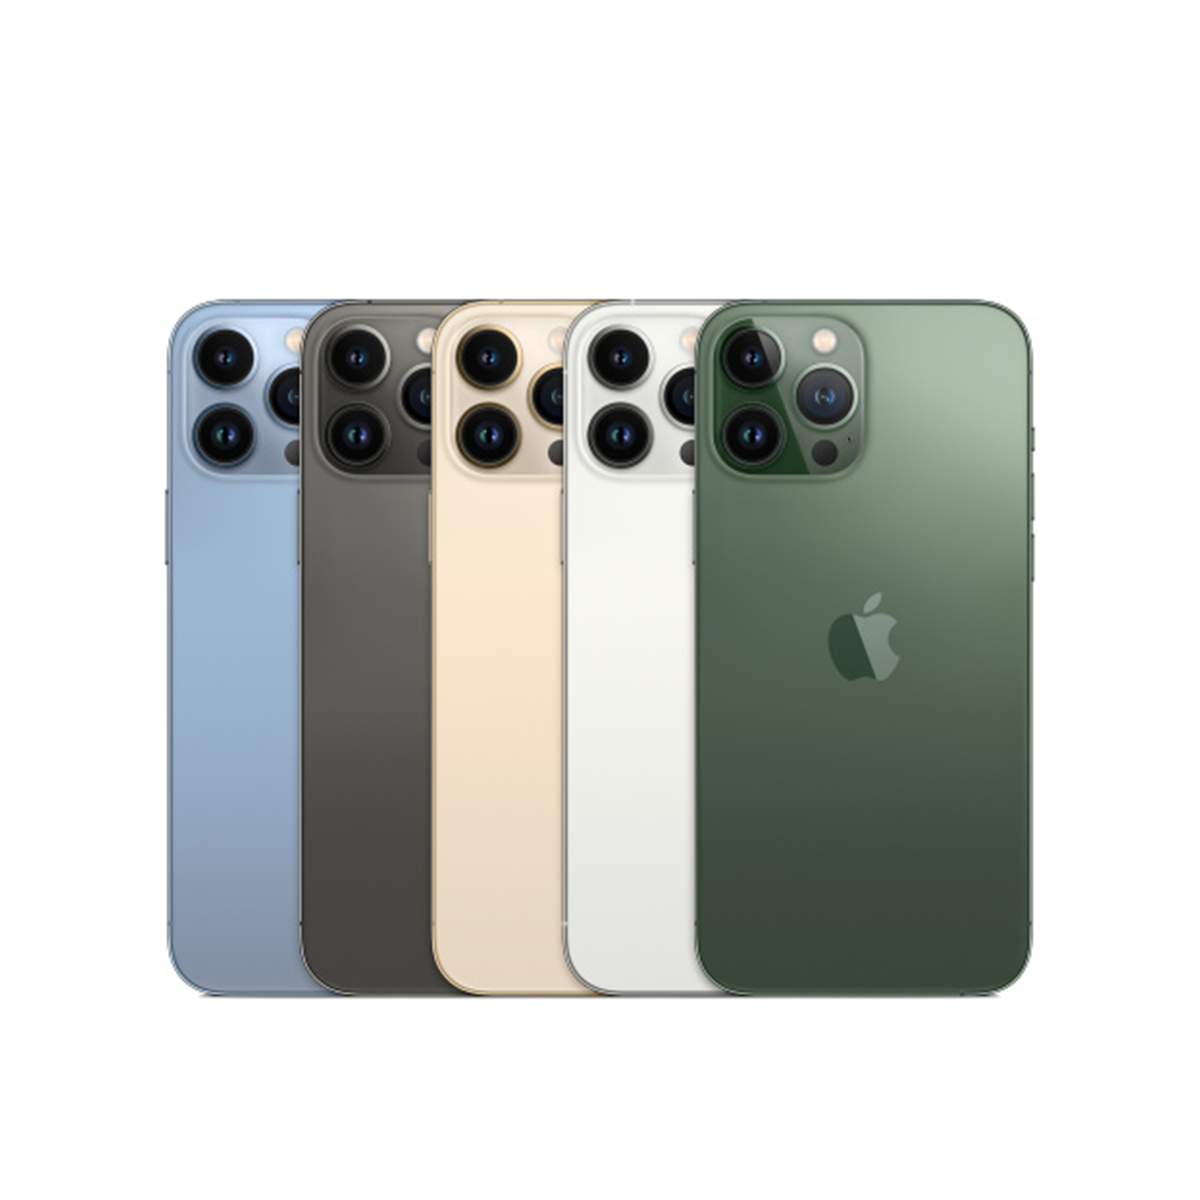  Điện Thoại Apple iPhone 13 Pro Max Chính Hãng VN/A 